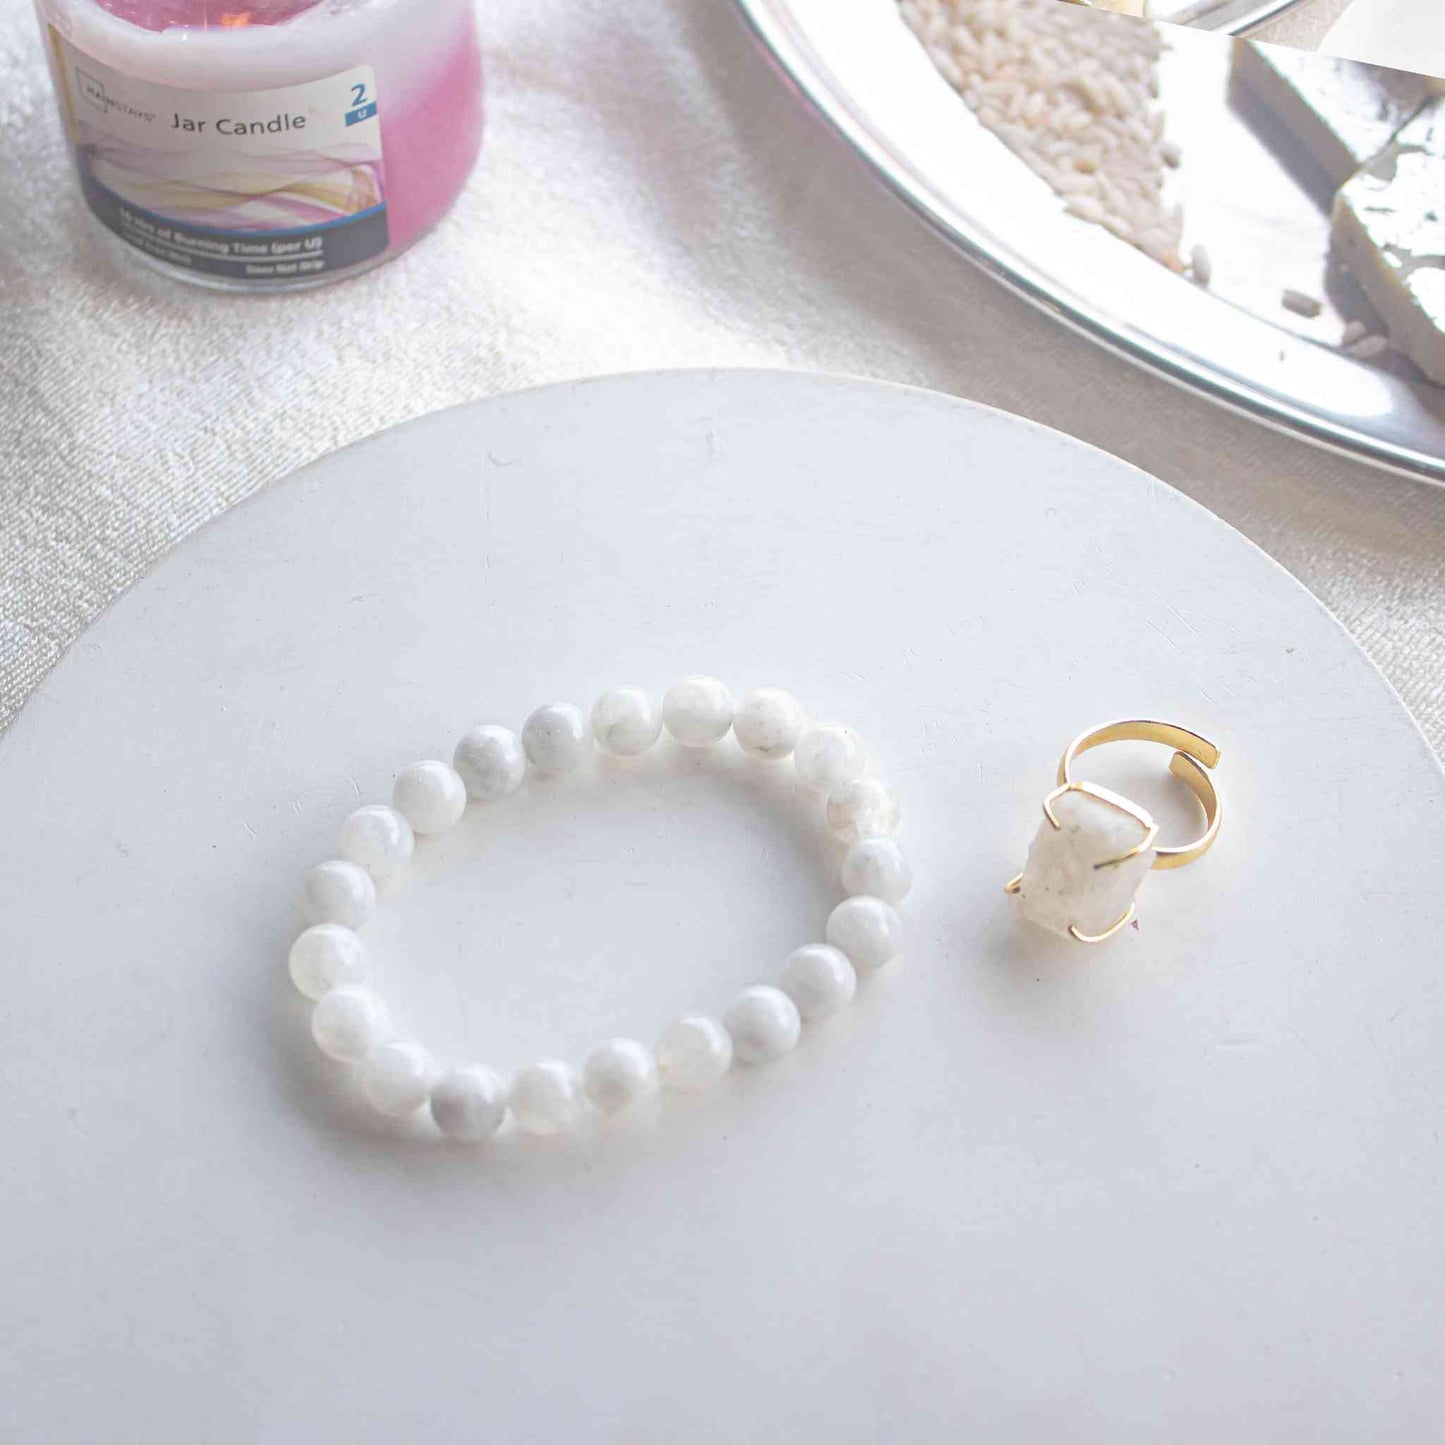 moonstone ring and moonstone bracelet gift hamper for sister